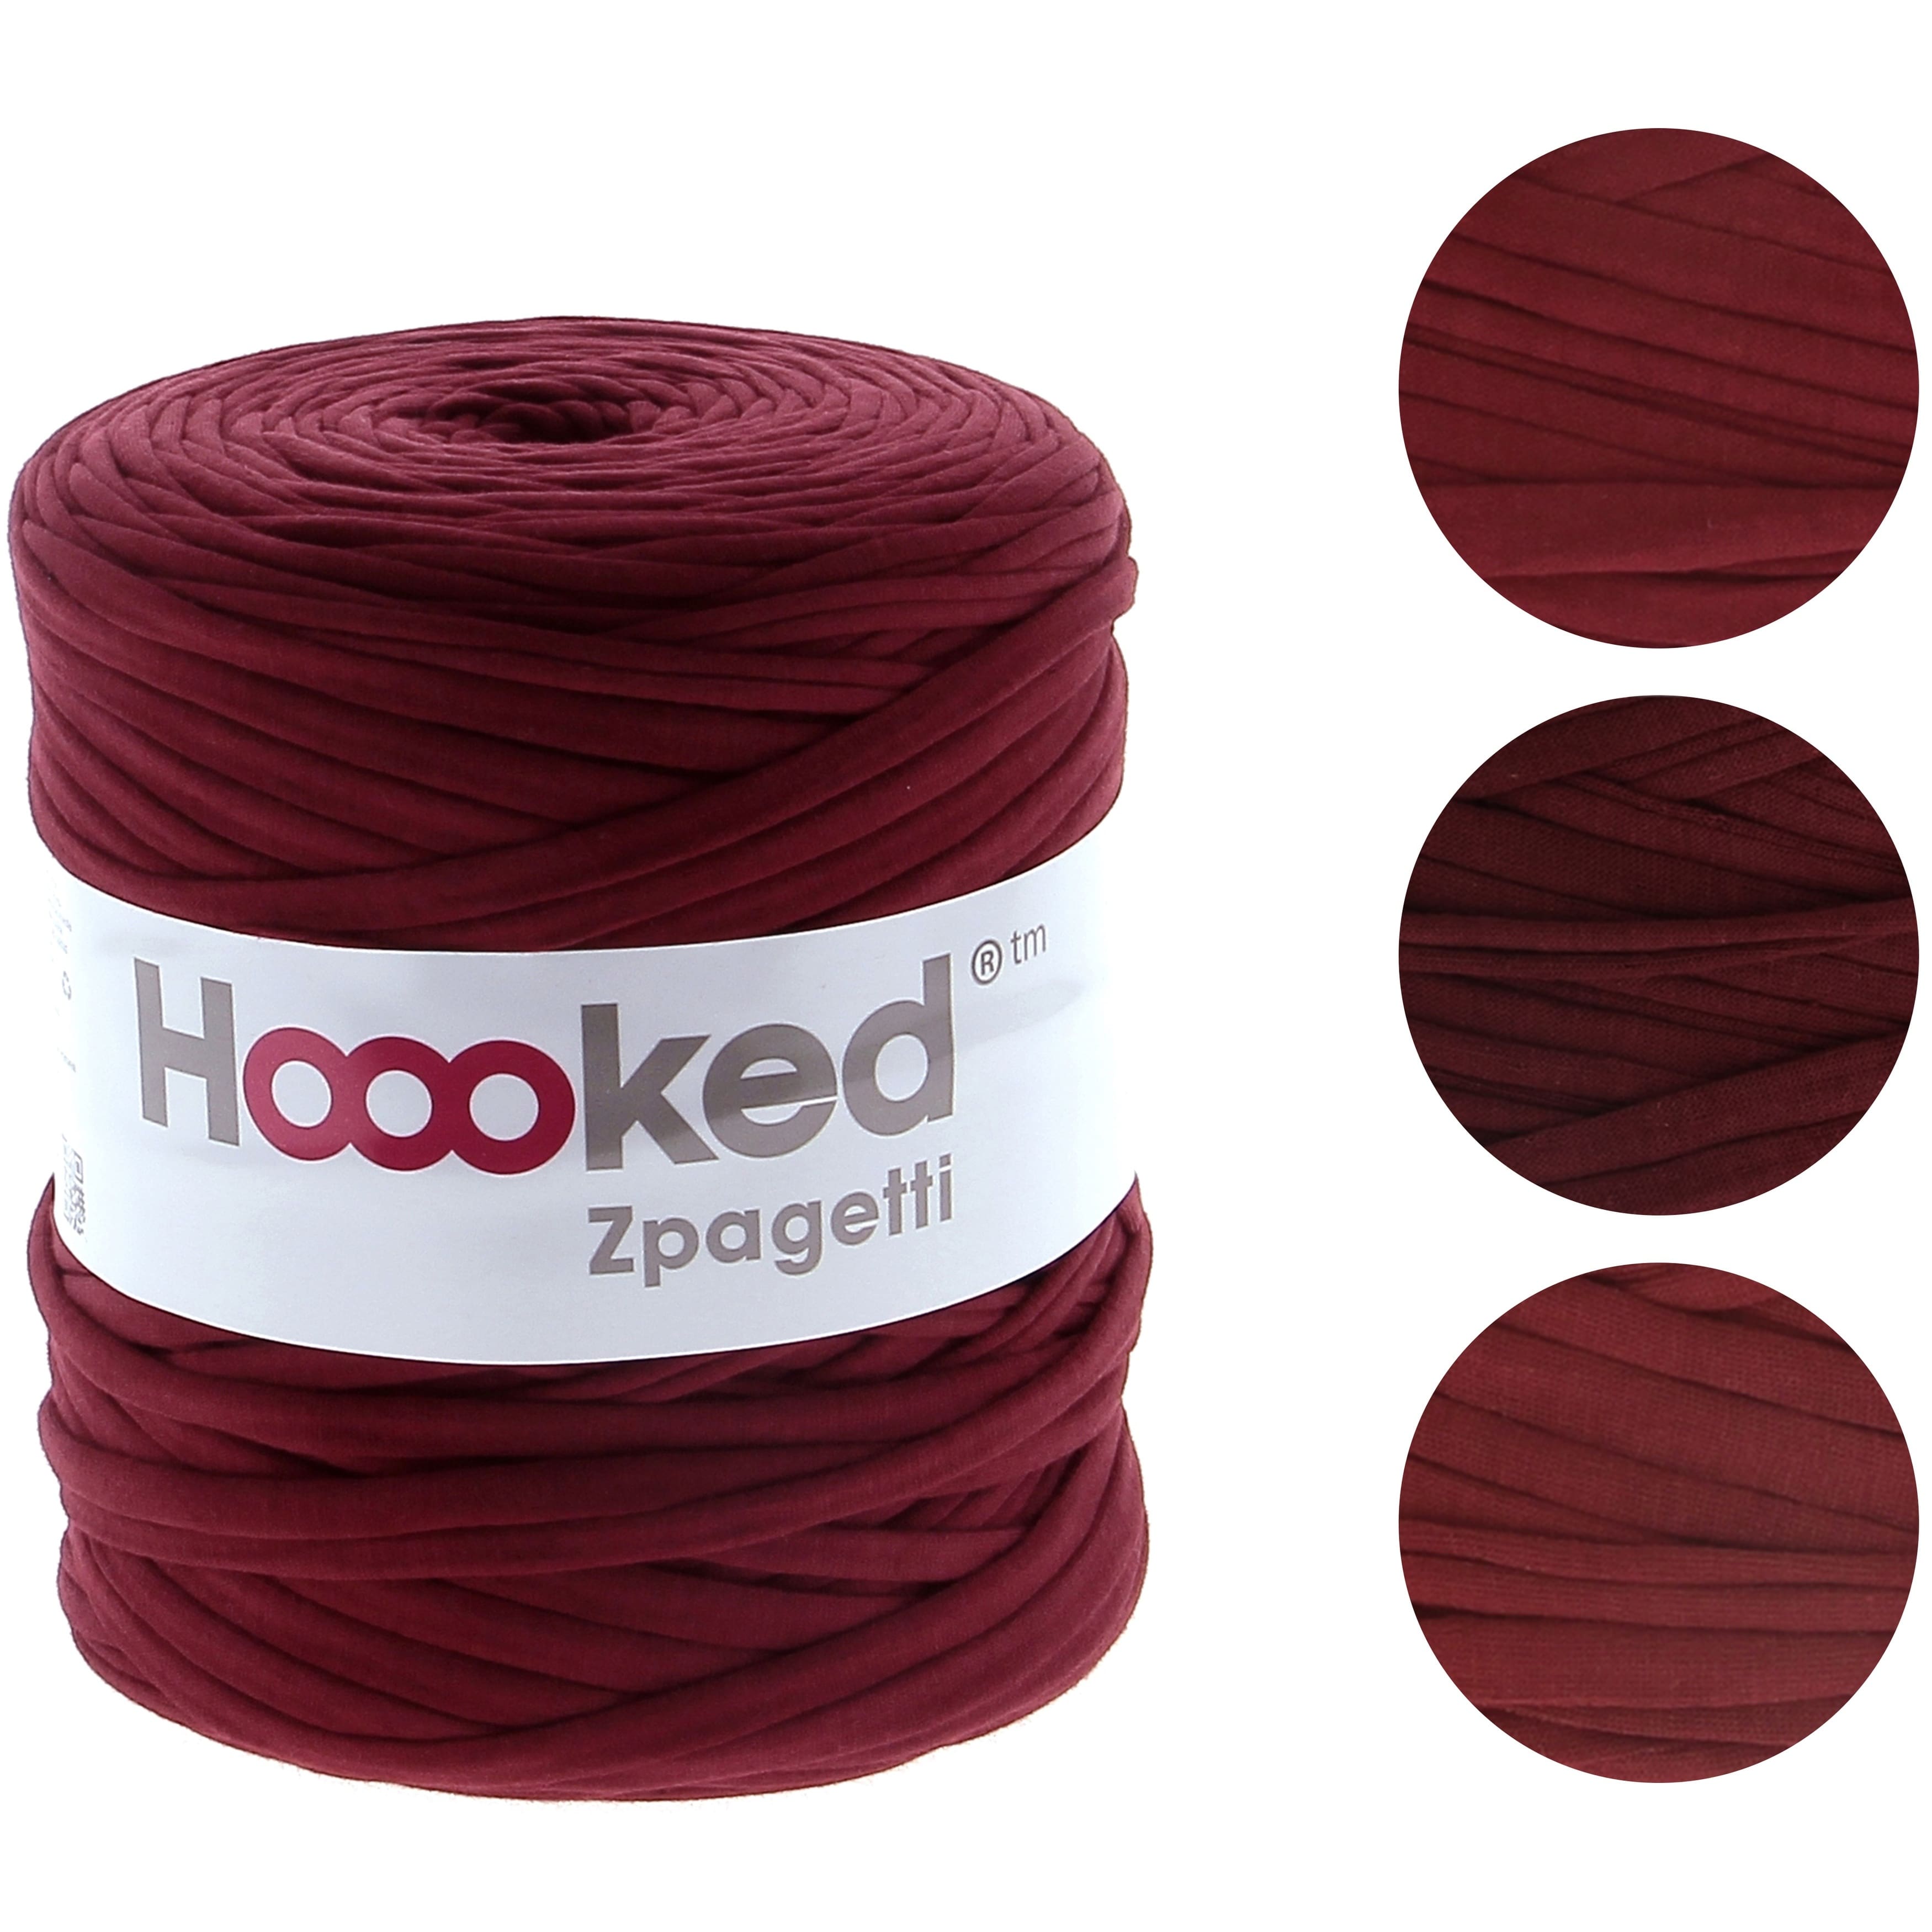 Hoooked Zpagetti Yarn | Michaels